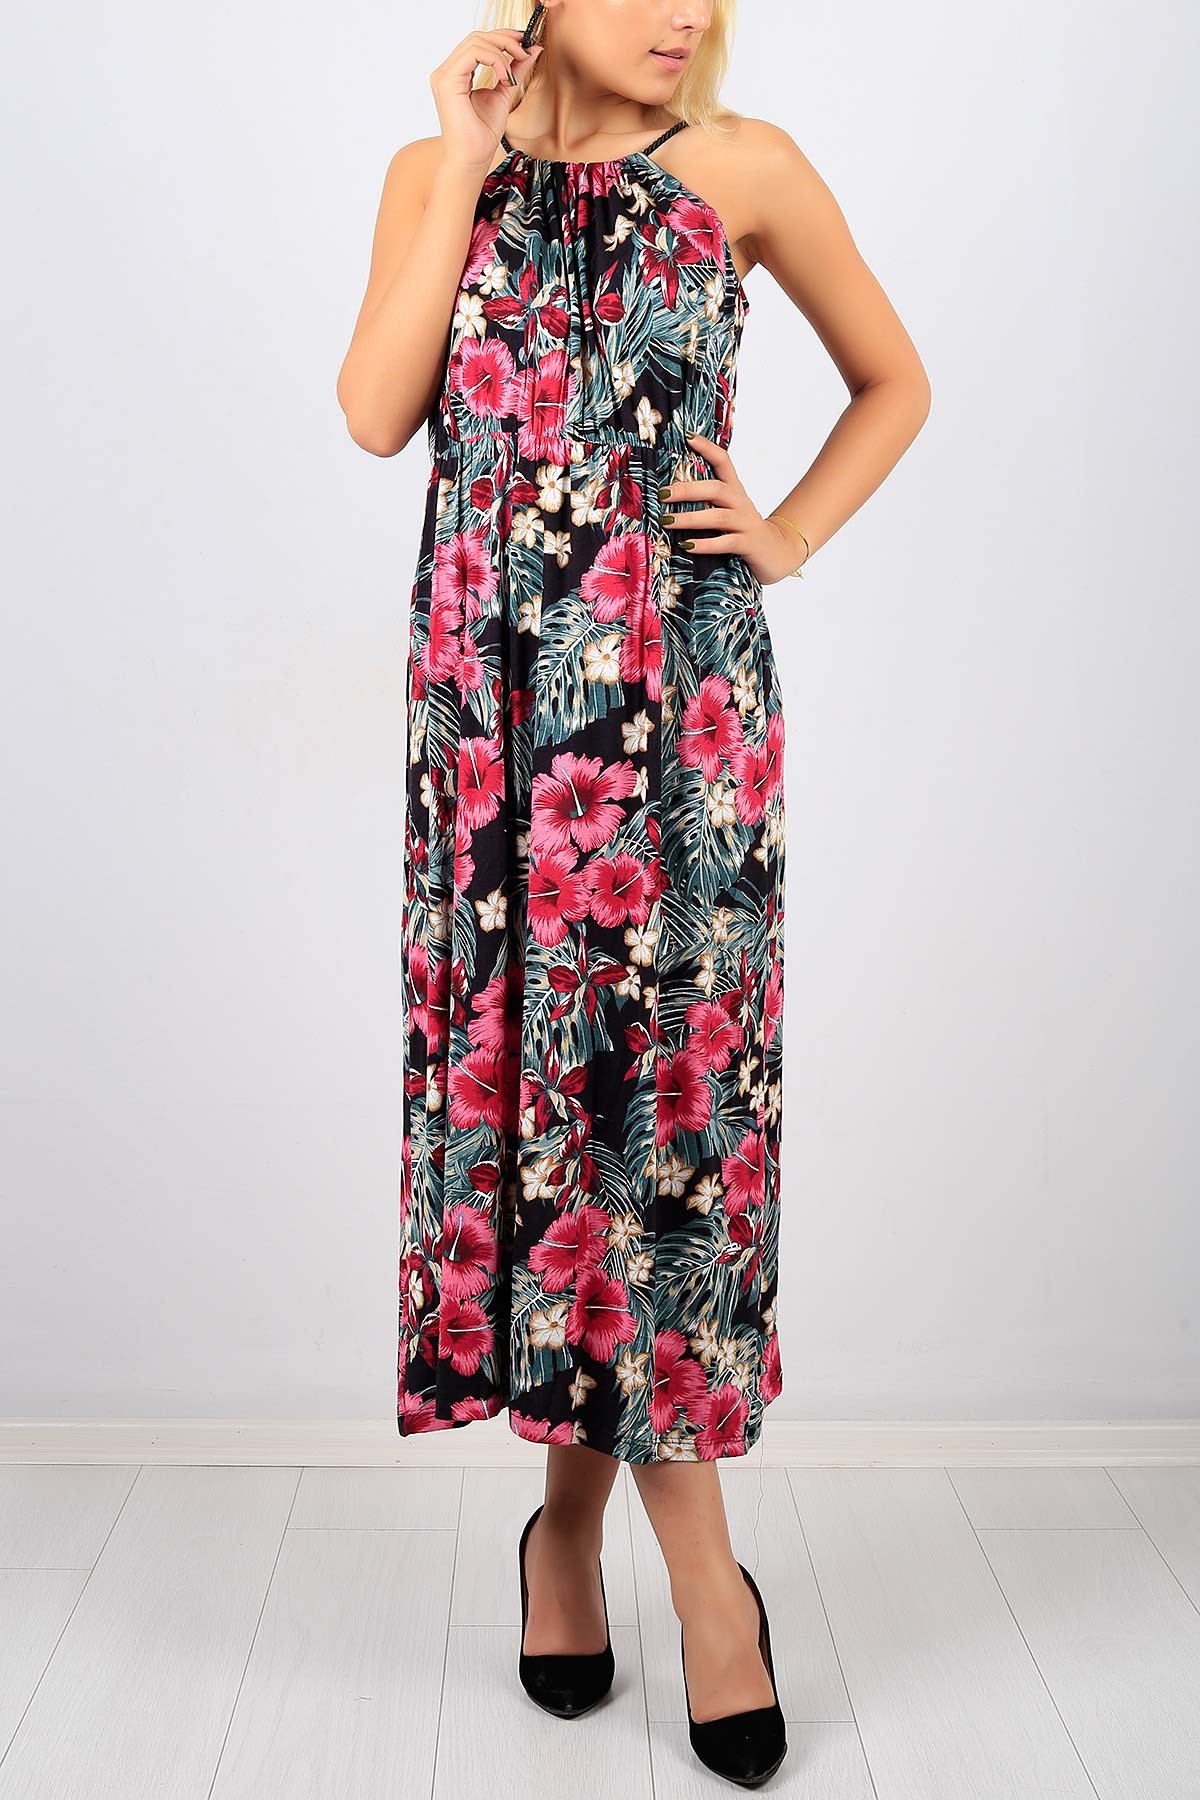 Askılı Çiçek Desen Bayan Elbise Modeli 8753B